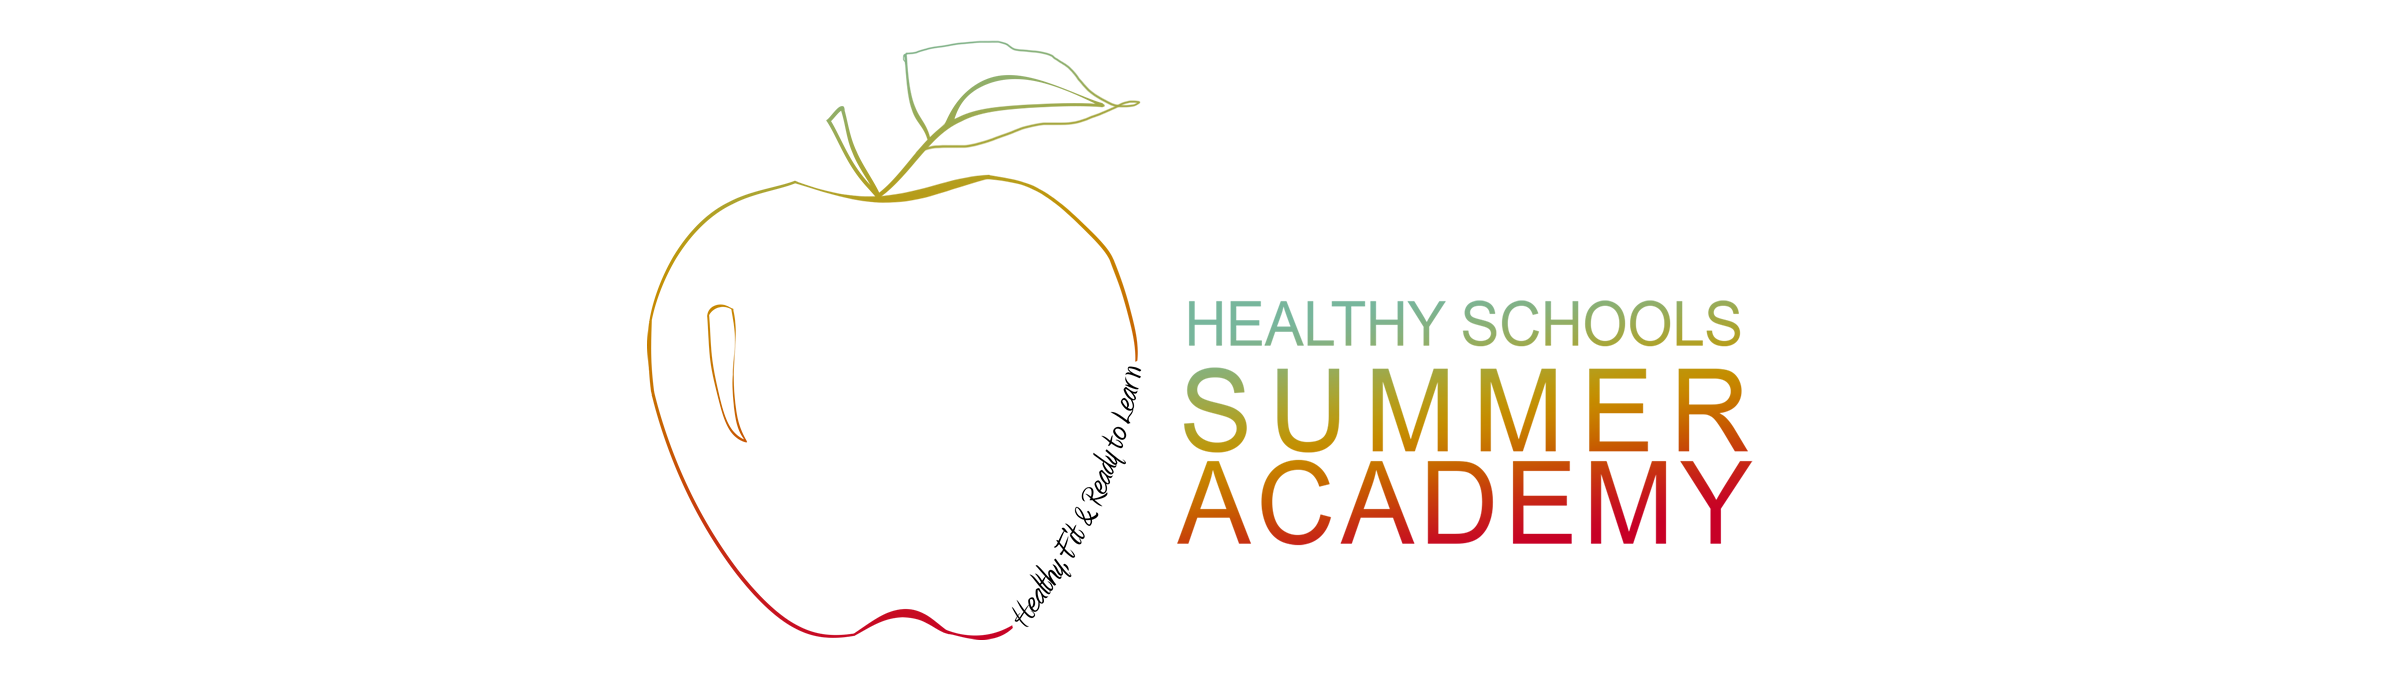 Healthy Schools Summer Academy